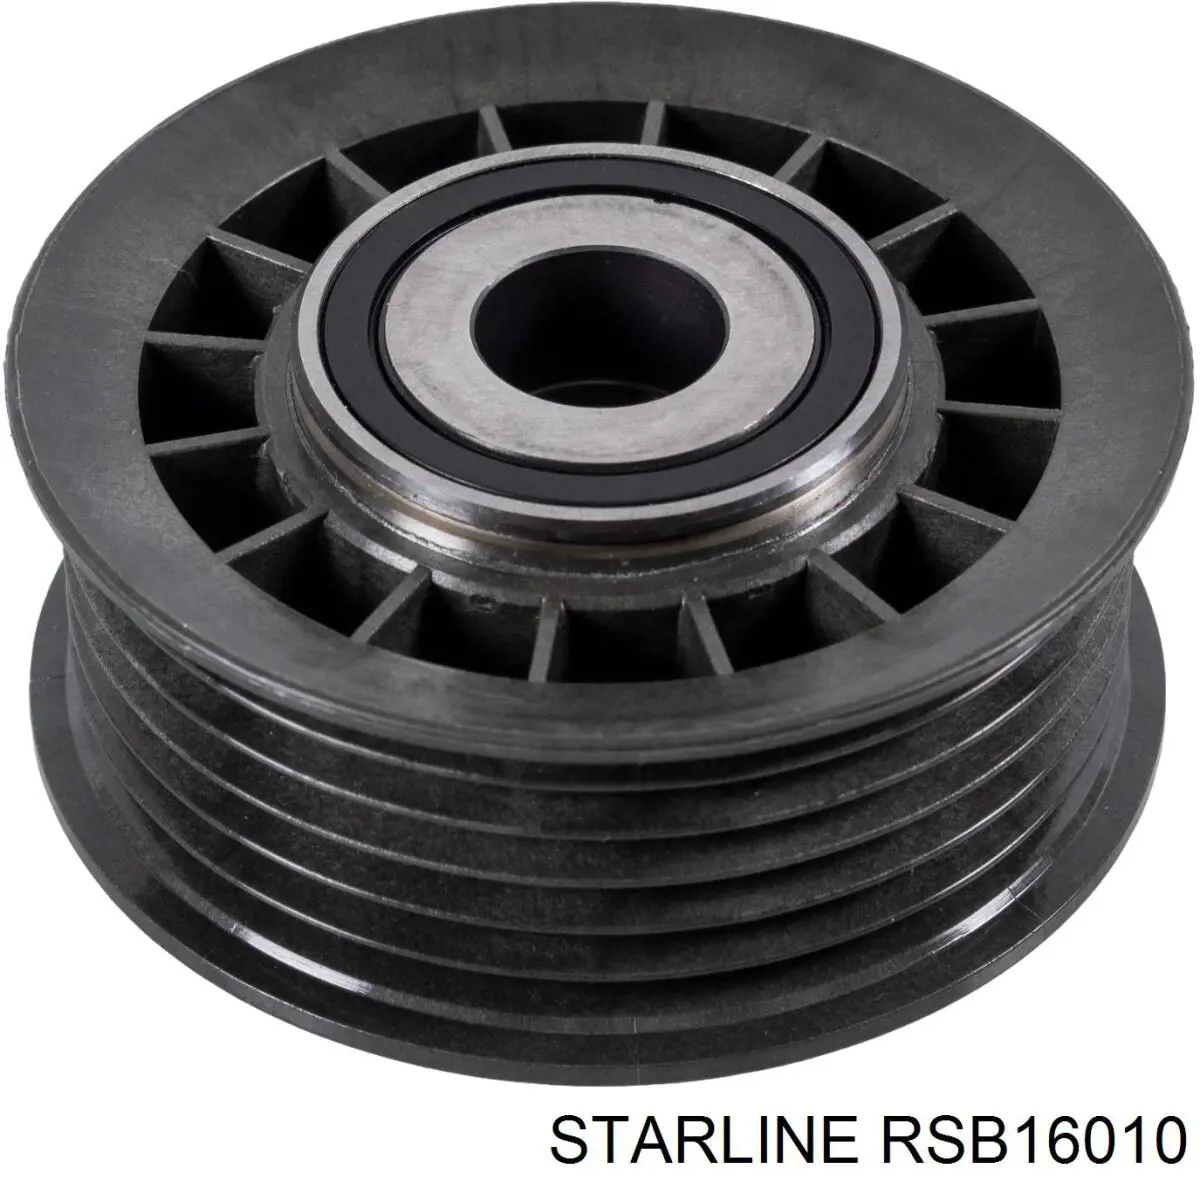 RSB16010 Starline polea inversión / guía, correa poli v